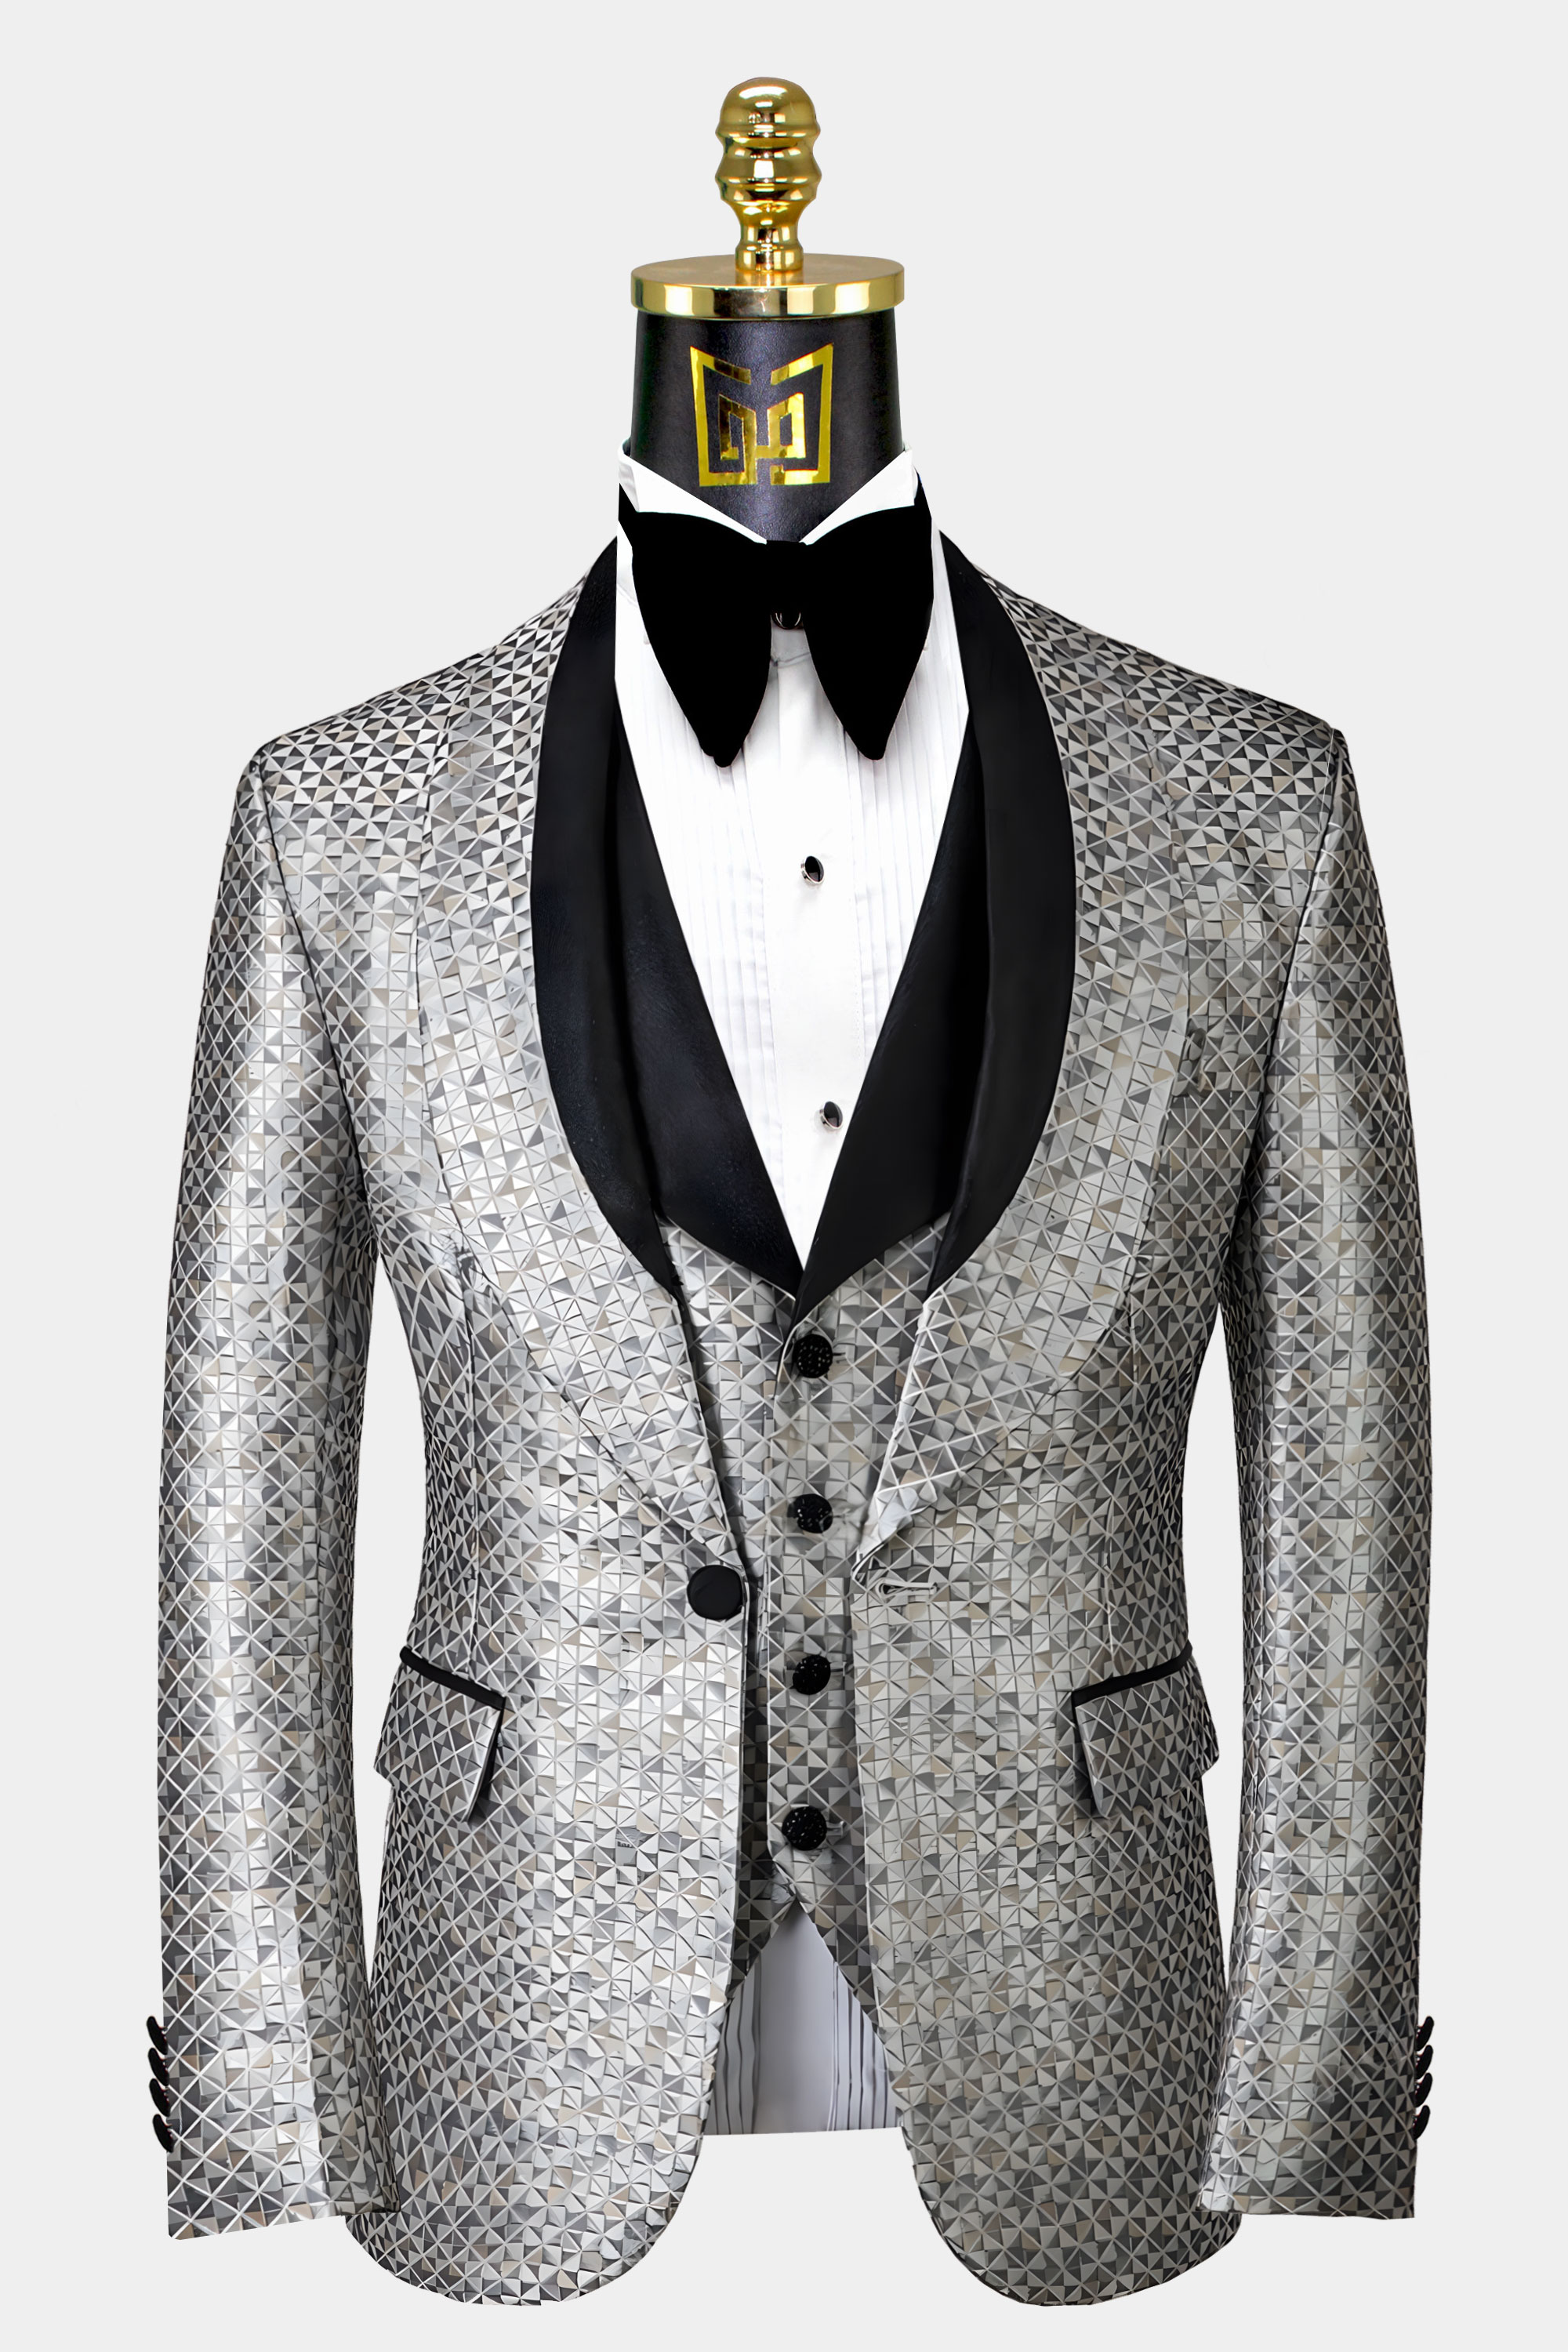 Silver-Grey-Tuxedo-Jacket-from-Gentlemansguru.com